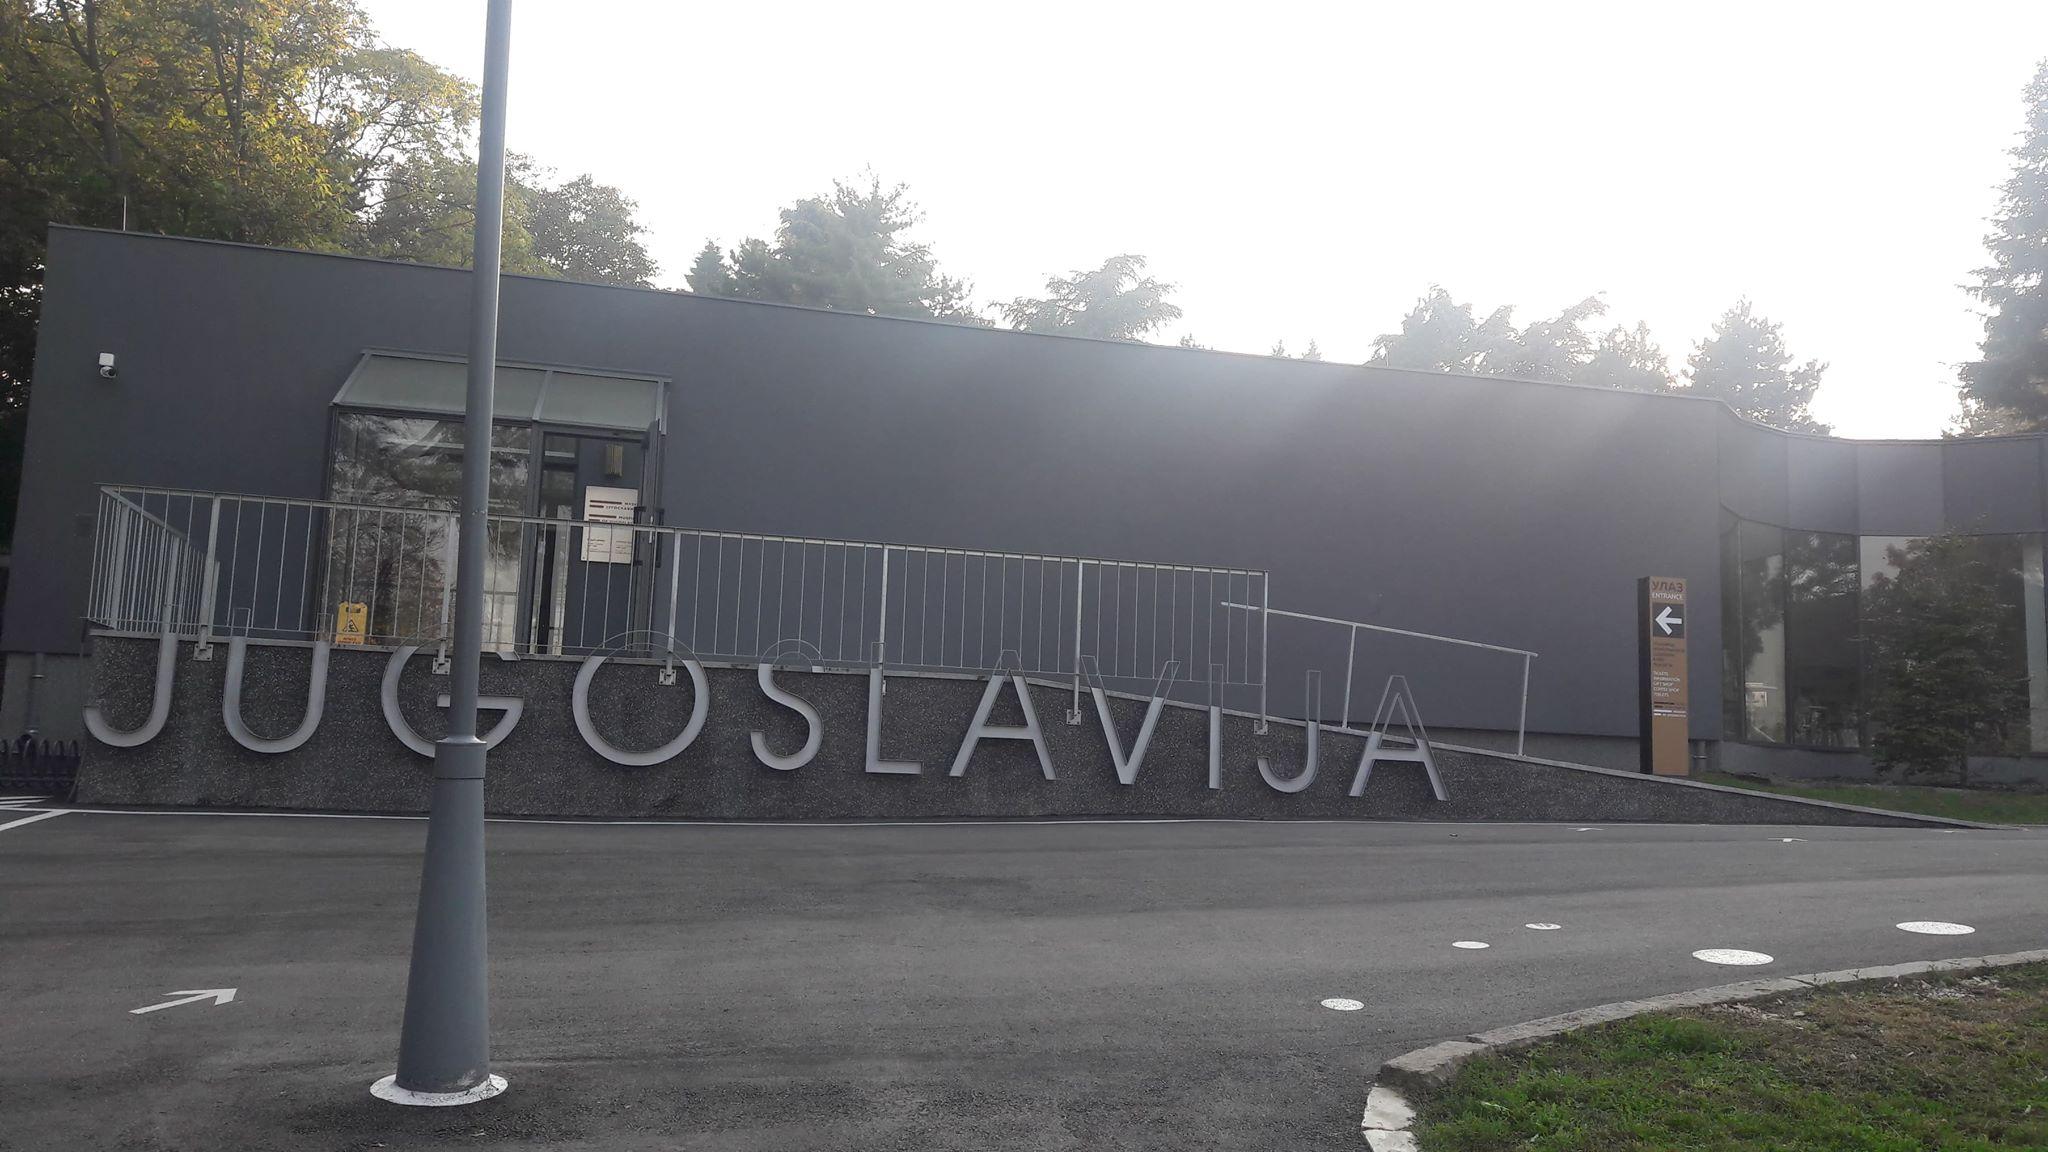 Mjesto gdje sve podsjeća na Jugoslaviju - Avaz